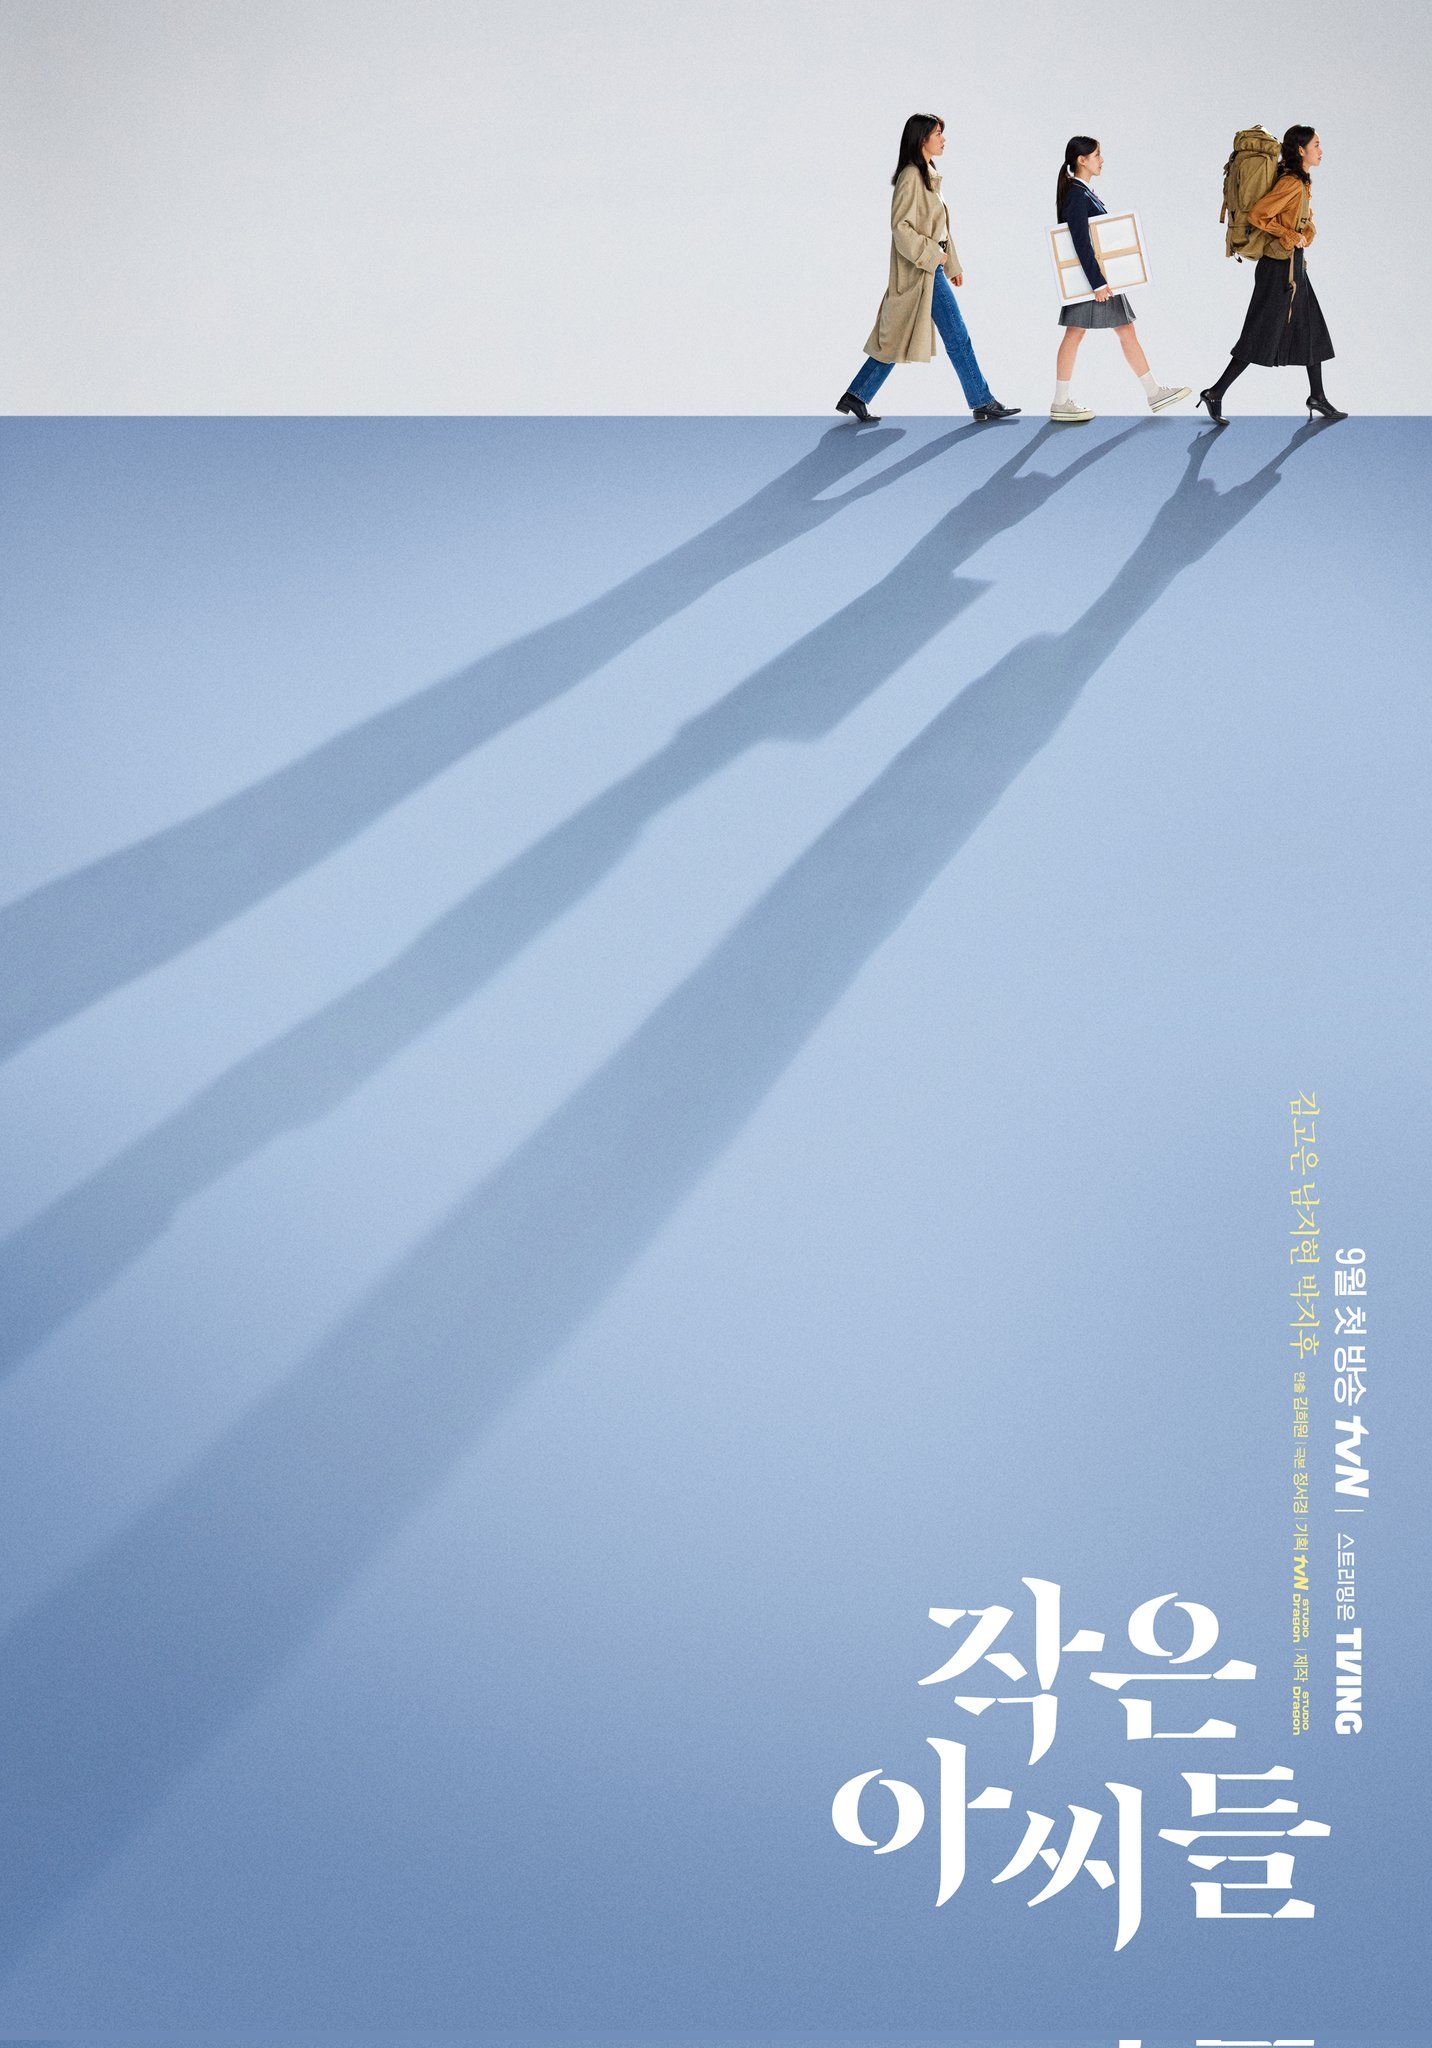 Drama Terbaru tvN 'Little Women' Rilis Poster Pertama, Kim Go Eun x Nam Ji Hyun x Park Ji Hu Jadi Saudara 